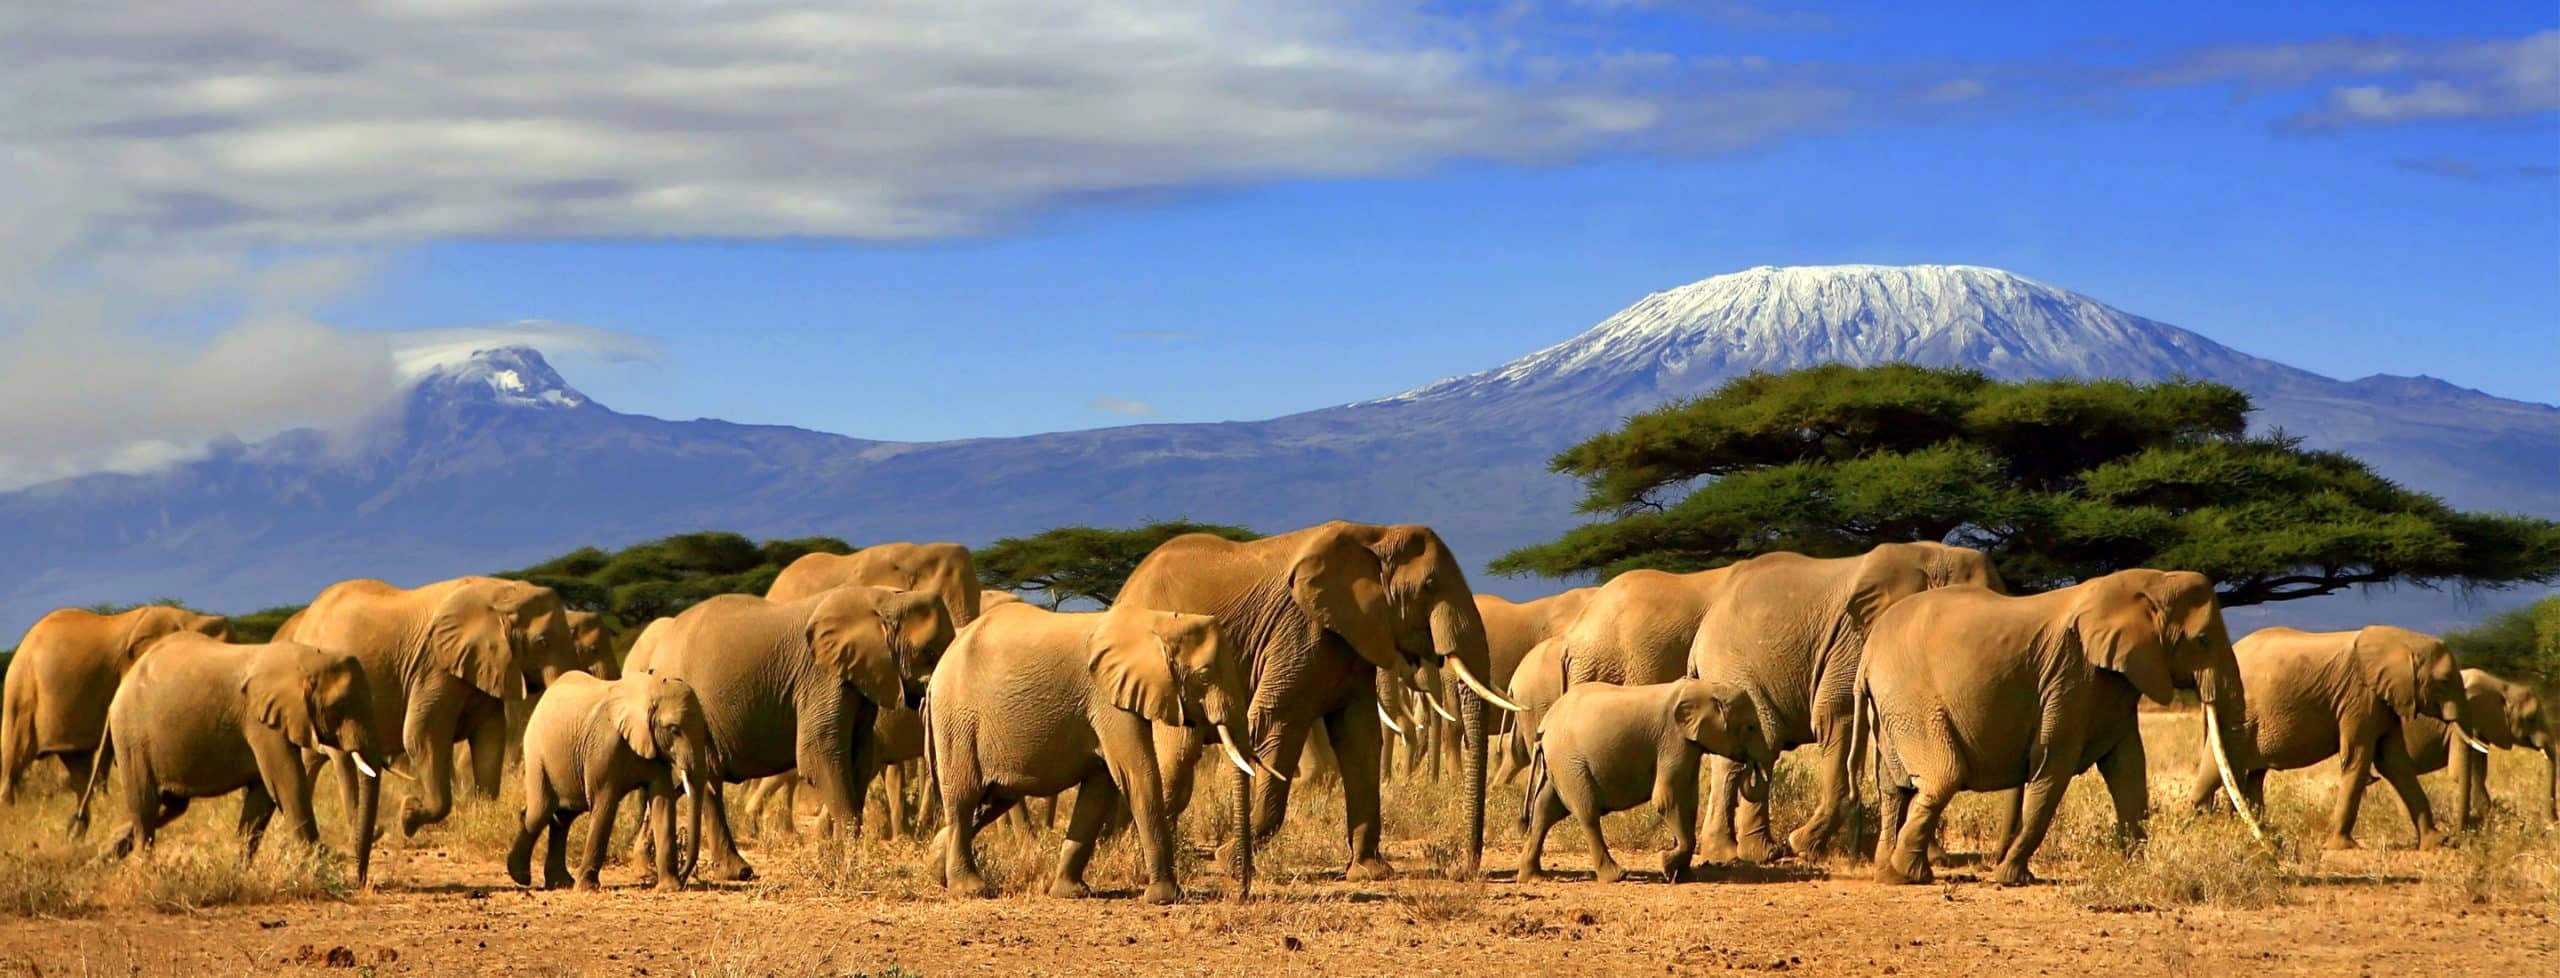 Luxury Private Kenya Safari Package for 2021-2022 | Micato Safaris